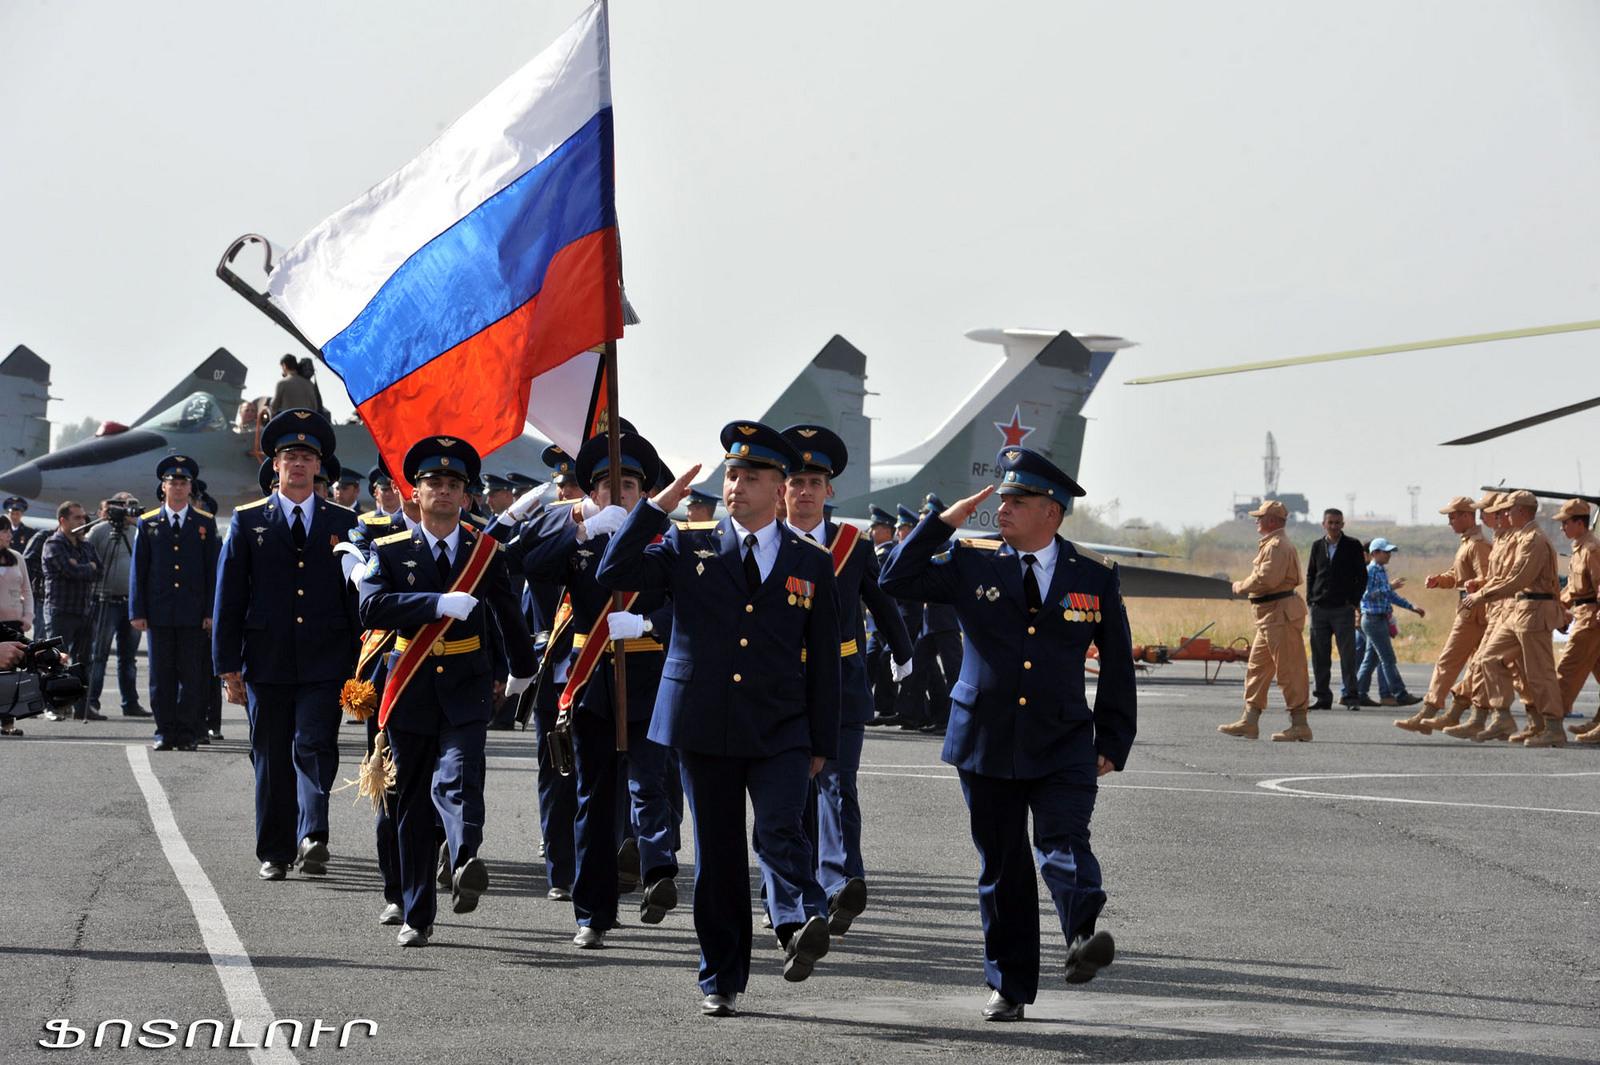 Ռուսաստանը չի դադարեցնի զենքի մատակարարումը Հայաստանին. ՌԴ փոխնախարար